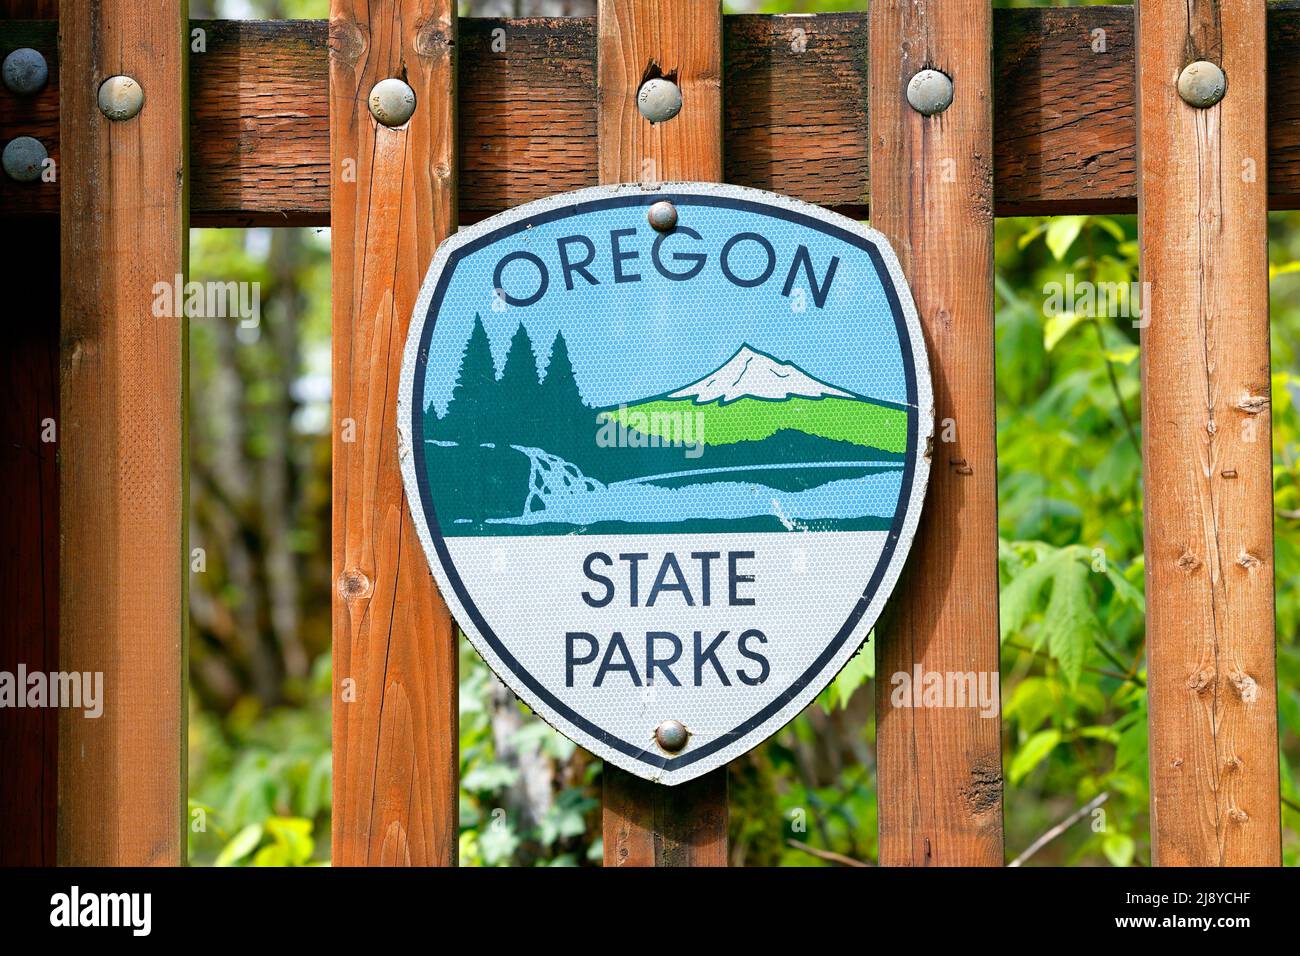 Panneaux des parcs nationaux de l'Oregon dans un parc régional de l'État de l'Oregon. Le logo présente Mount Hood, des cascades et des forêts. Banque D'Images